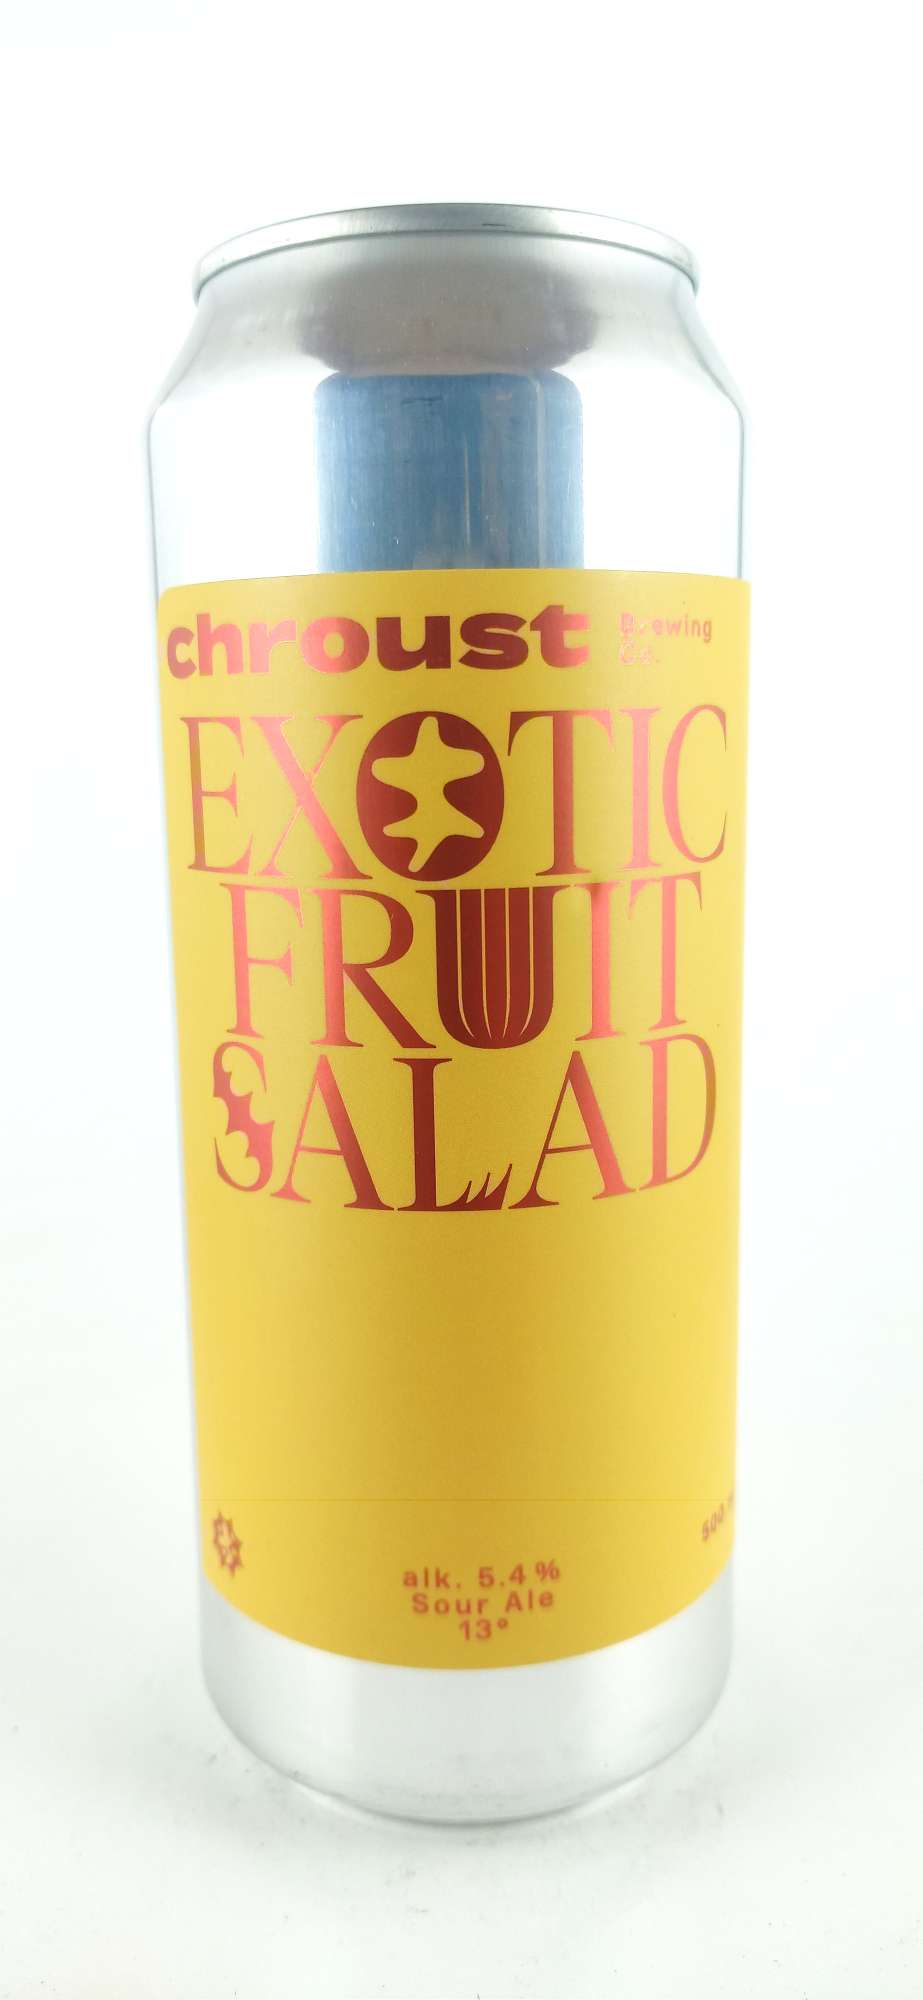 Chroust Exotic Fruit Salad Sour Ale 13°